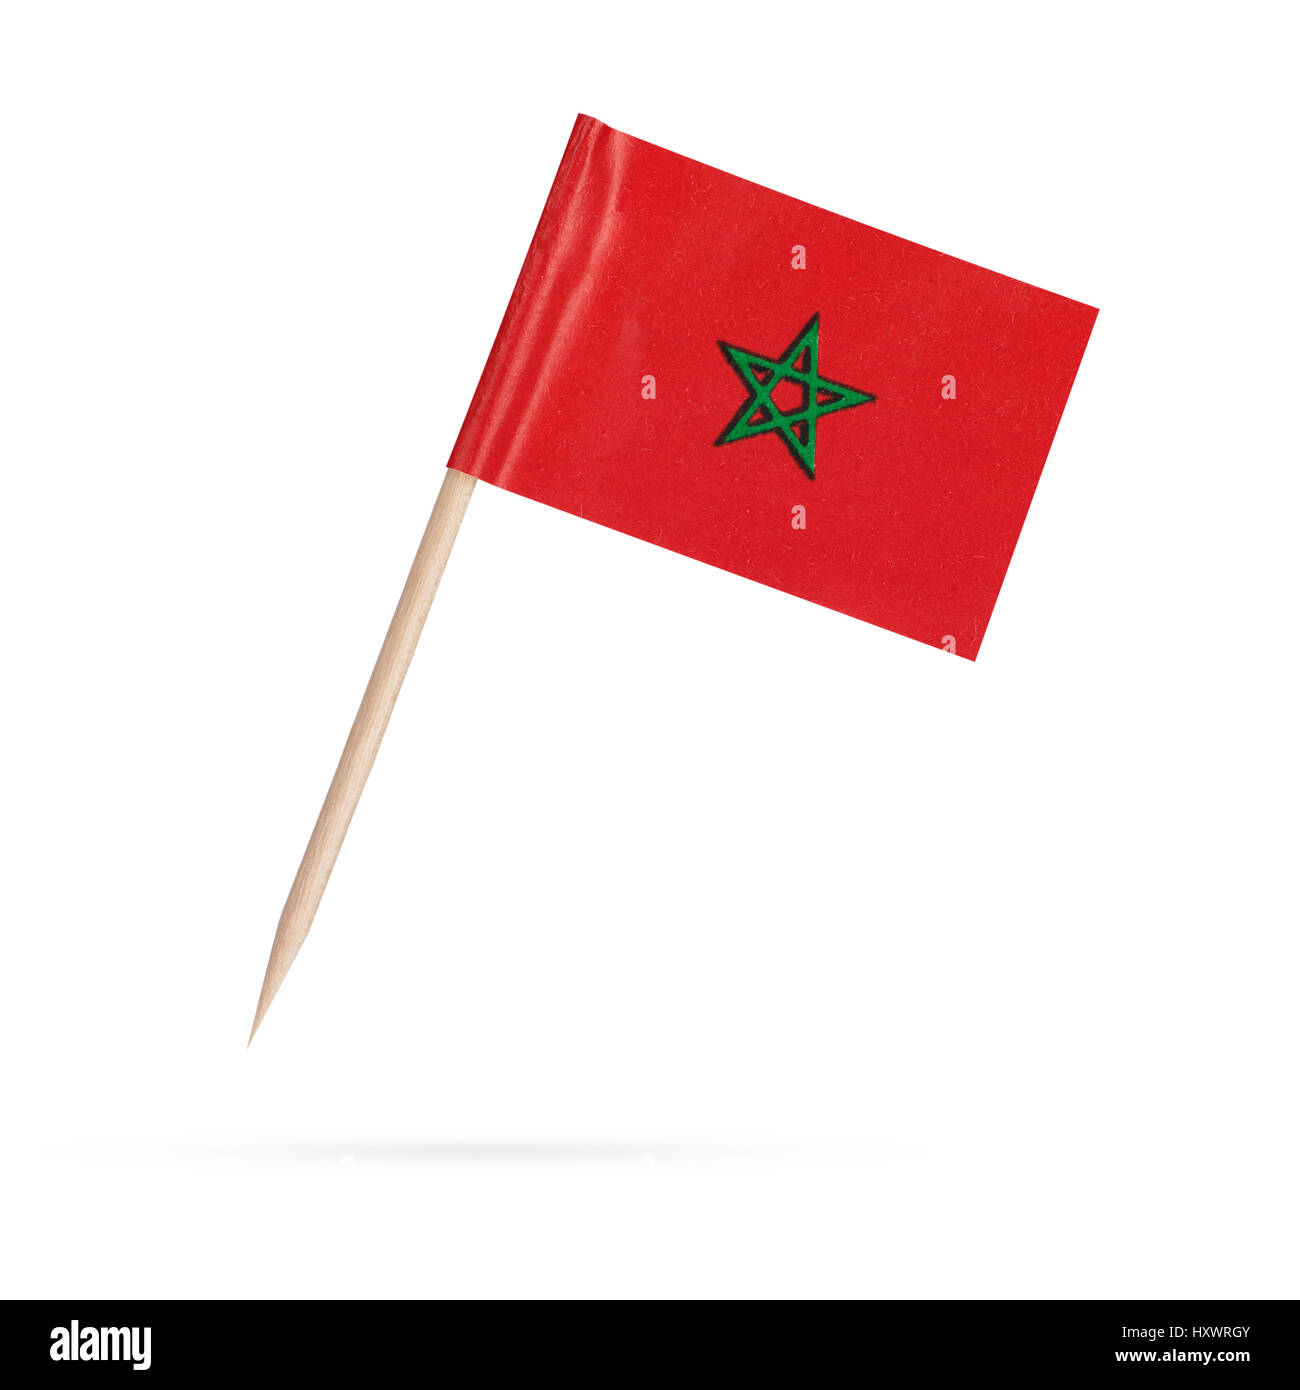 File:Drapeau du Maroc 1.jpg - Wikimedia Commons